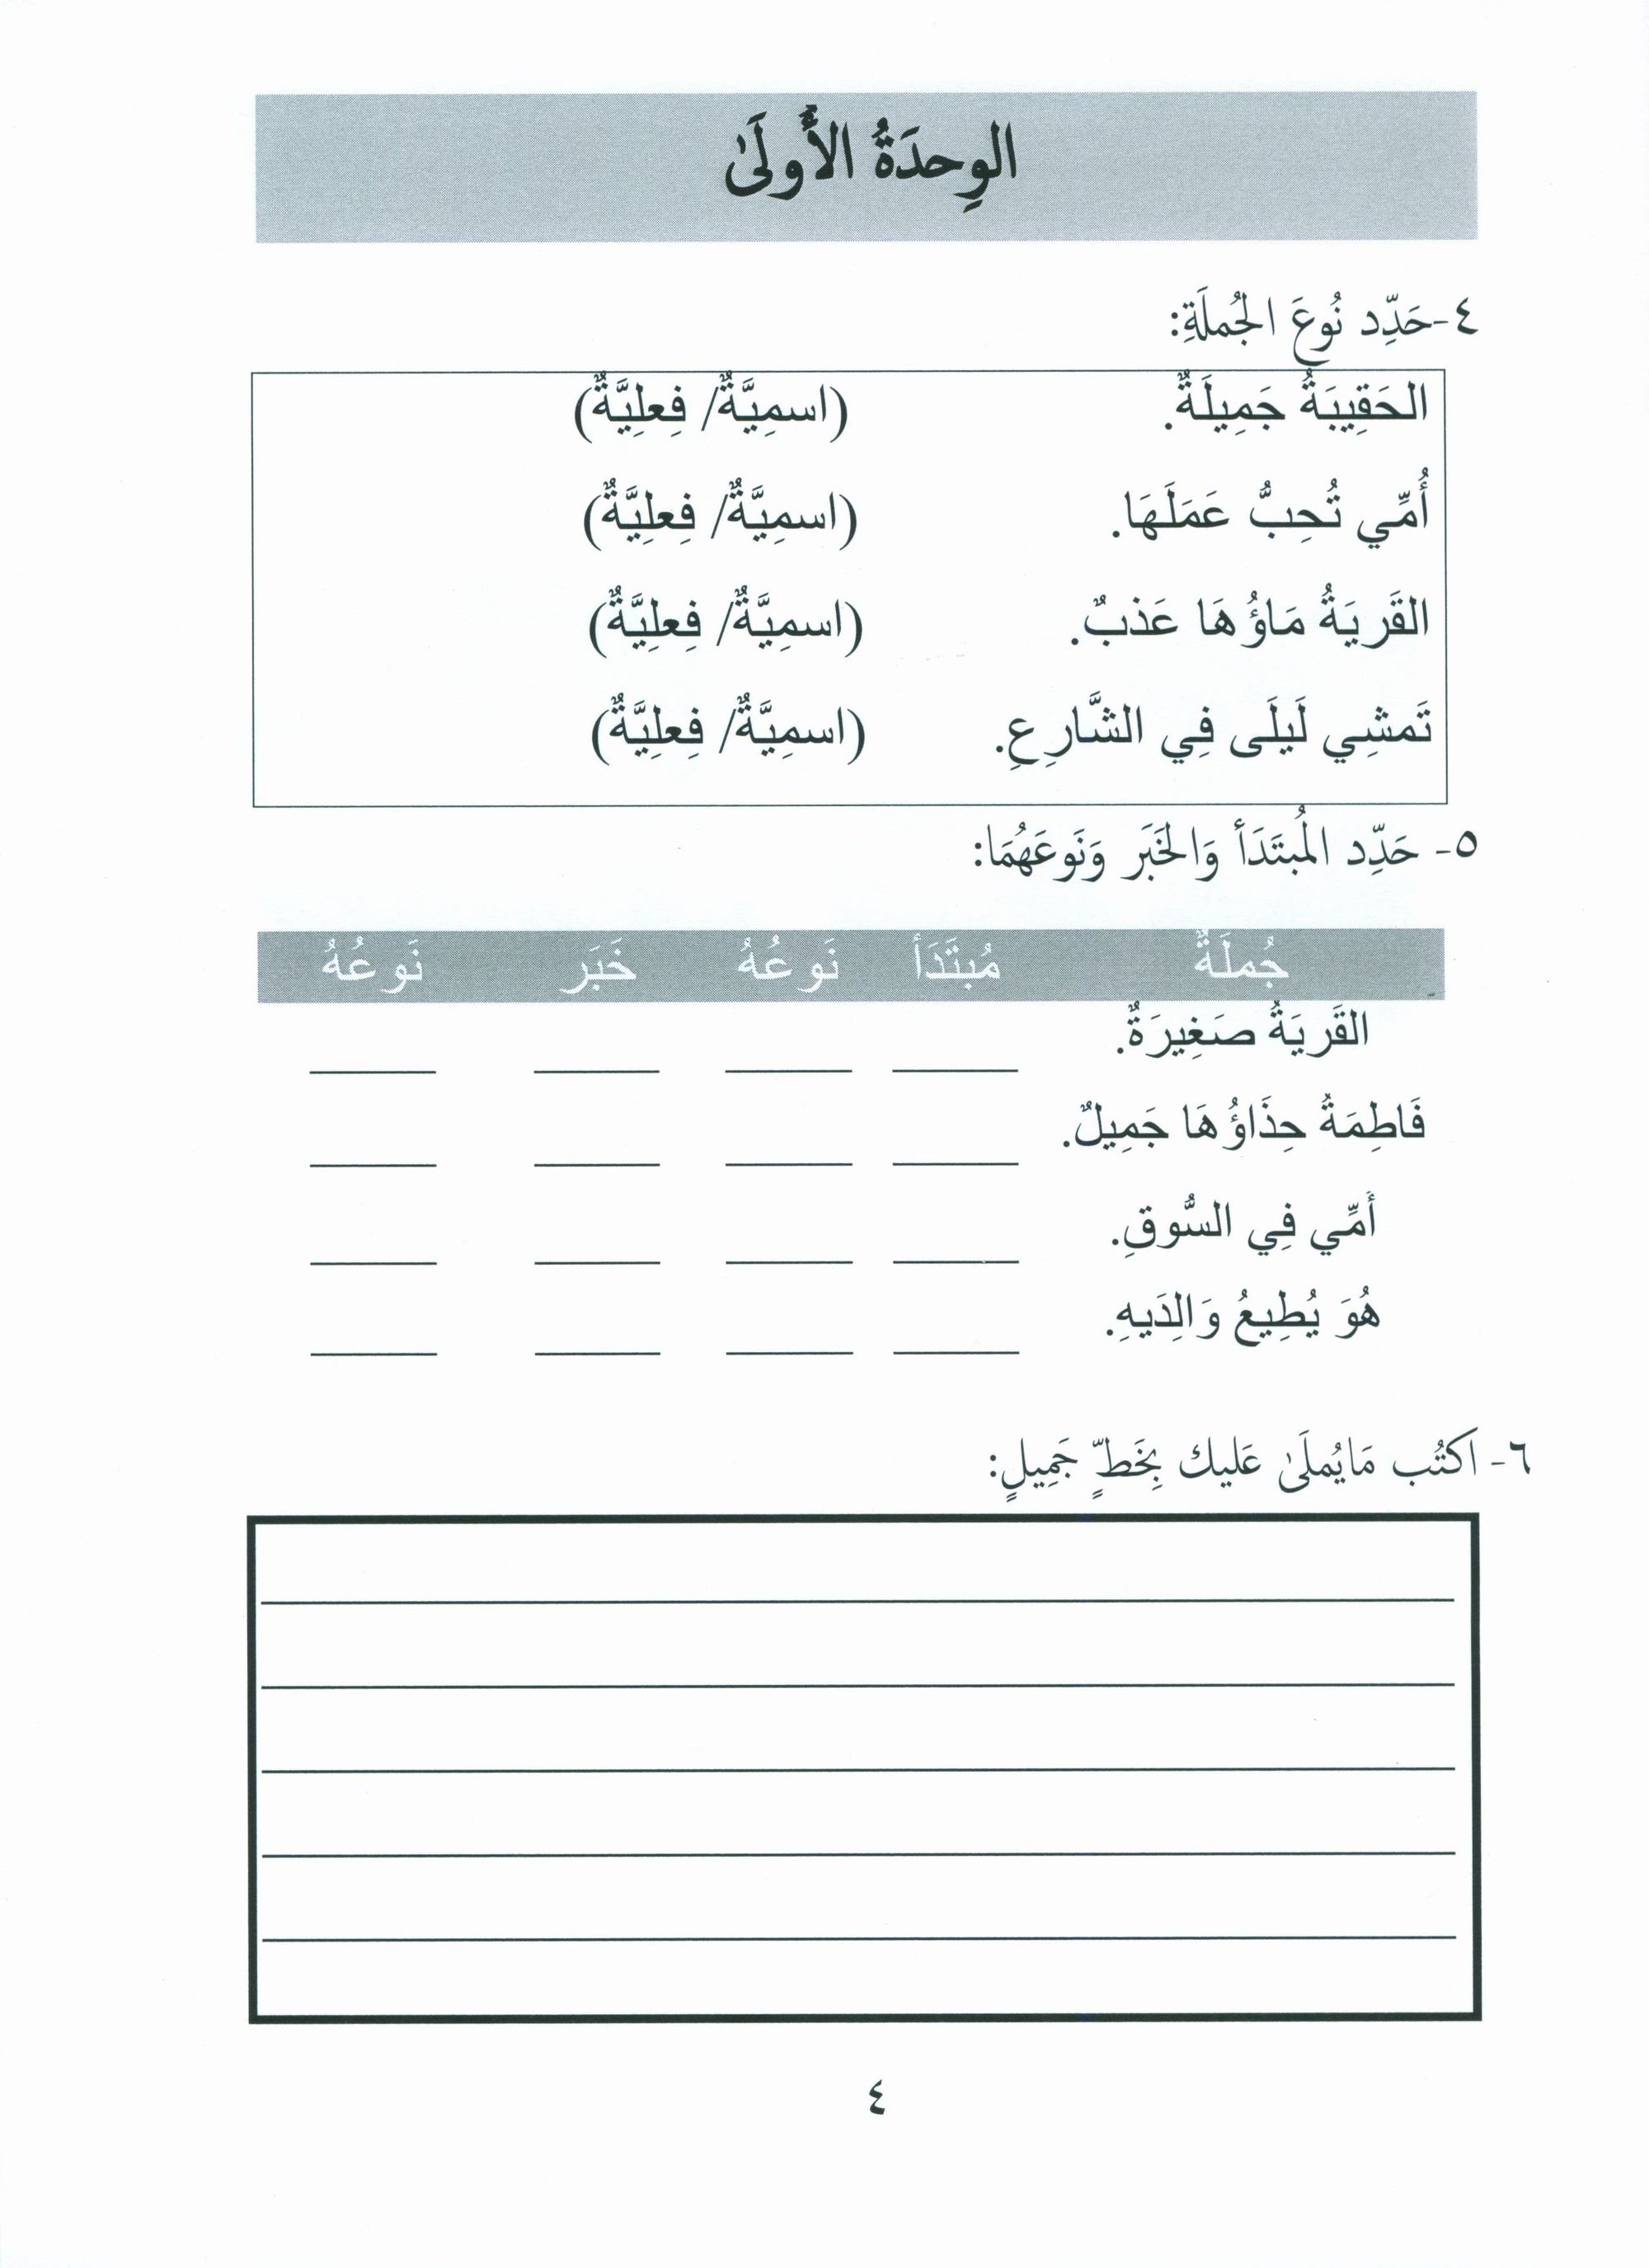 Gems of Arabic Assessment Level 6